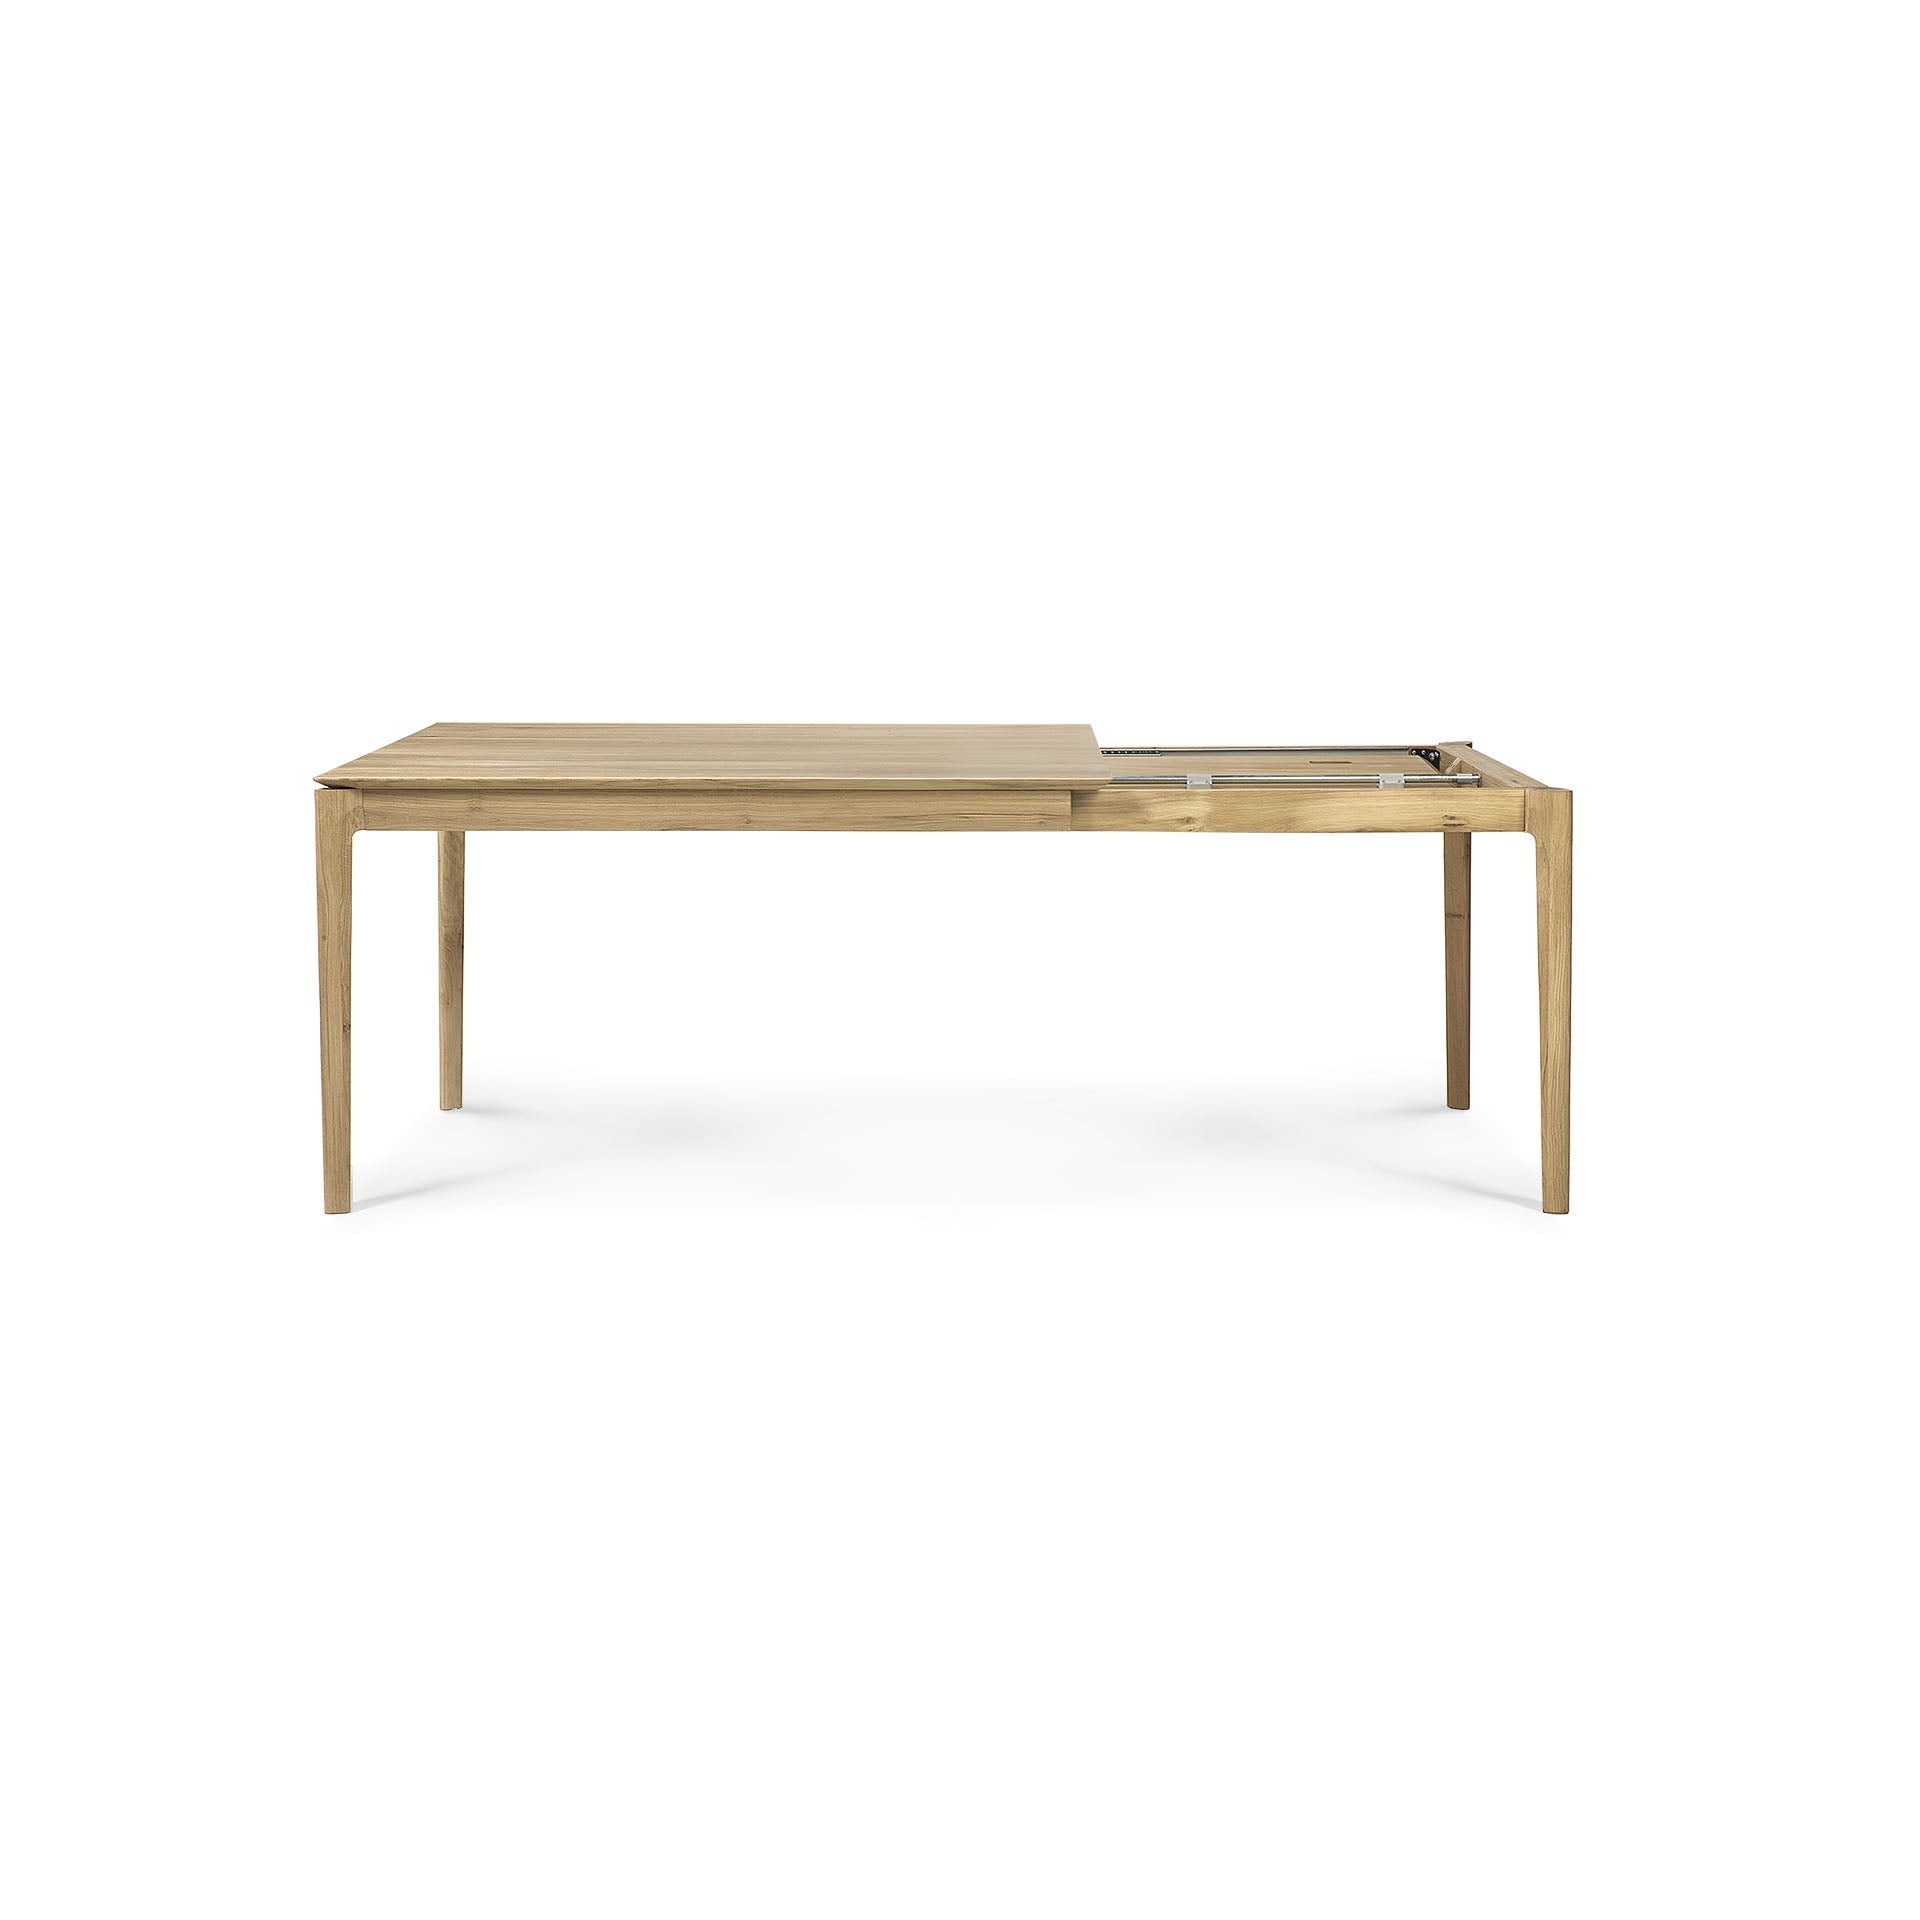 比利時原裝進口實木傢俬 - 伸縮系列 - Bok系列橡木可伸縮餐桌